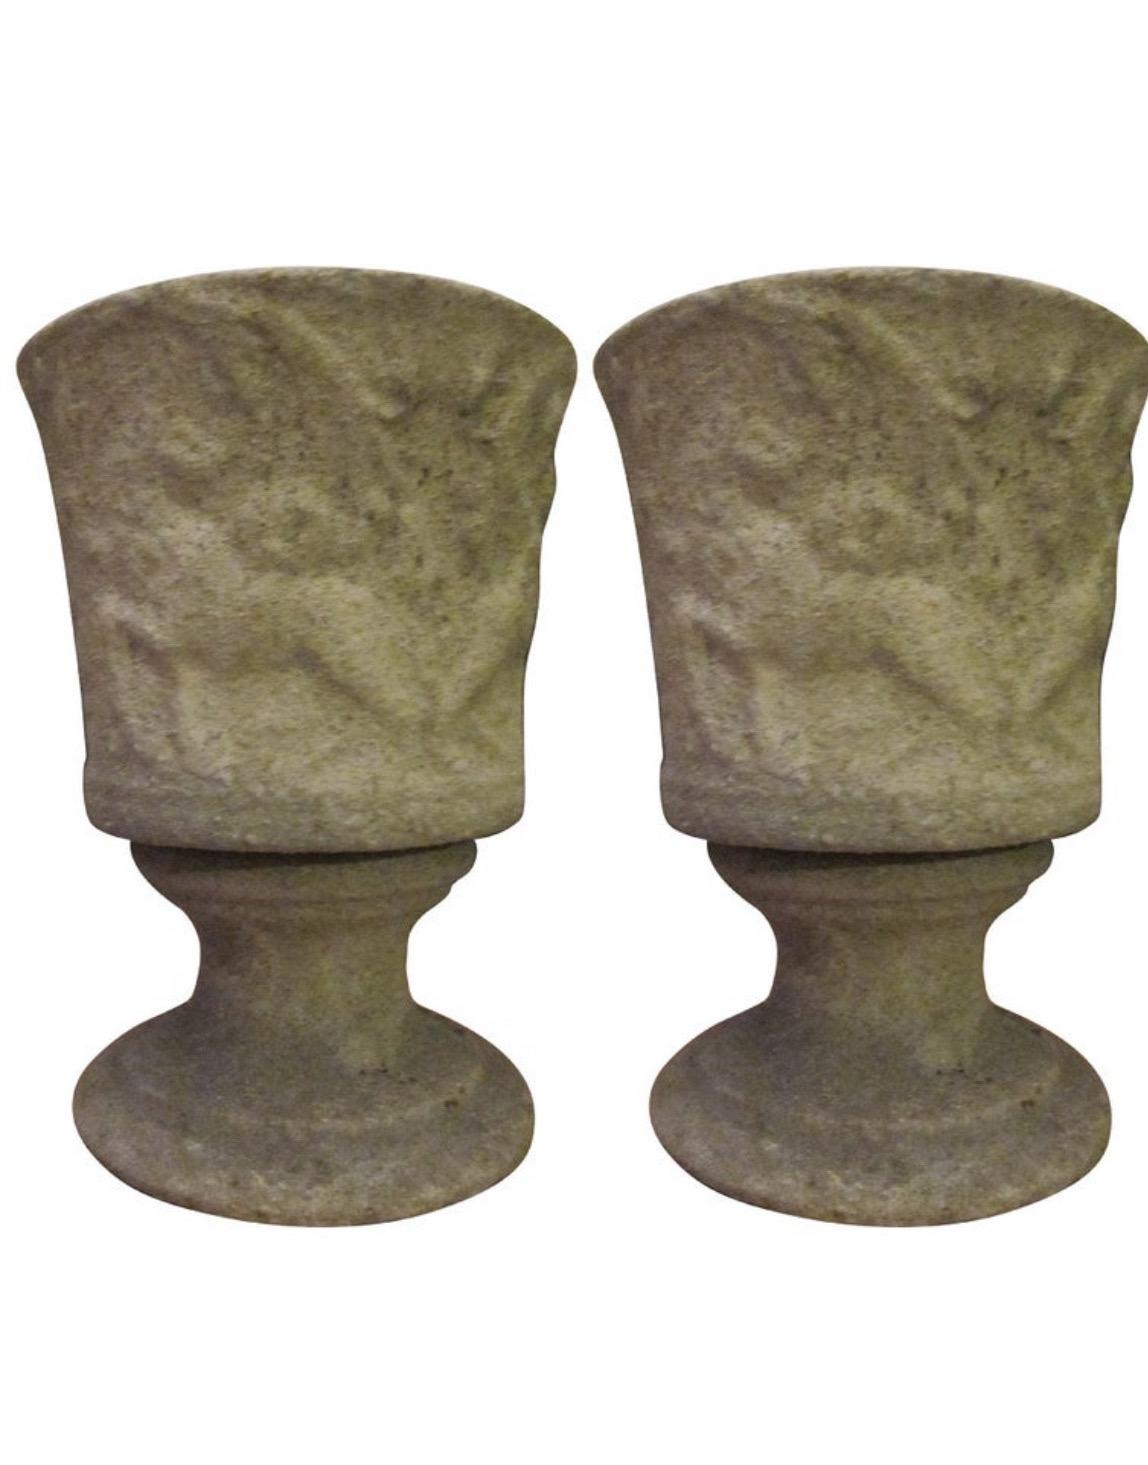 Rare paire de lampes de table italiennes Art Déco en pierre dans le style de Gio Ponti. Les pièces sont en forme d'urne sur un piédestal surélevé et sont sculptées. Ils peuvent également faire office de lampadaires pour concentrer la lumière vers le